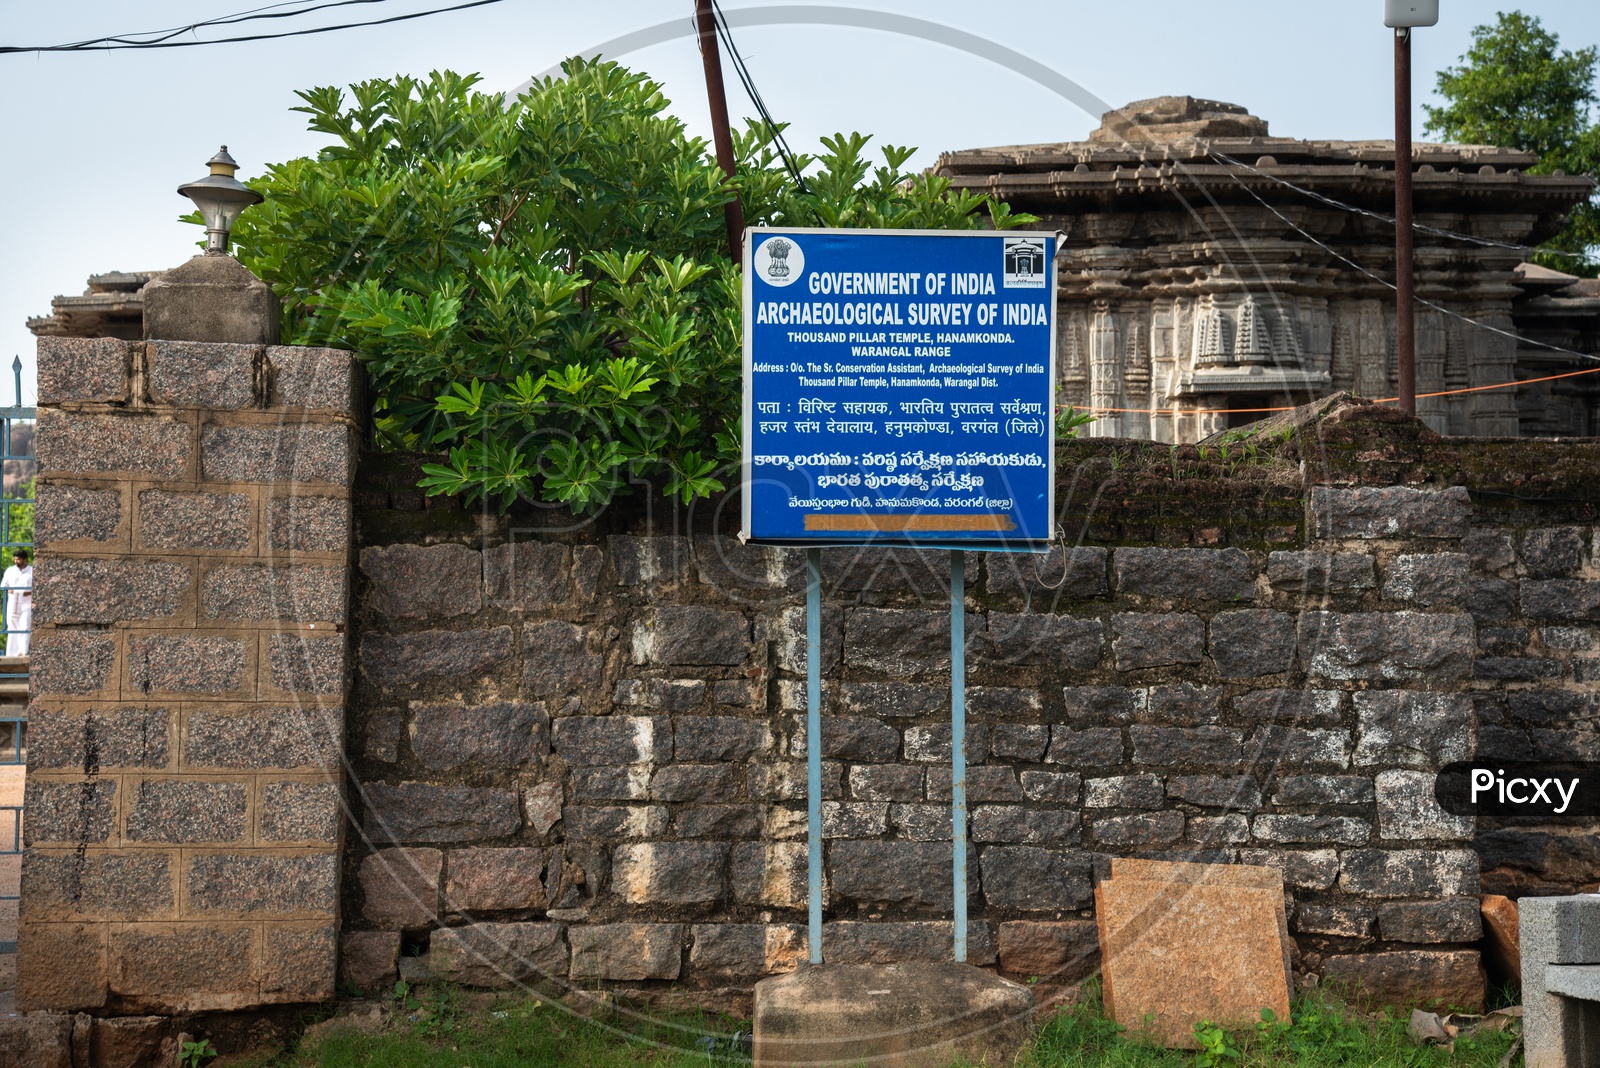 Thousand Pillar Temple, Archeological survey of India, warangal